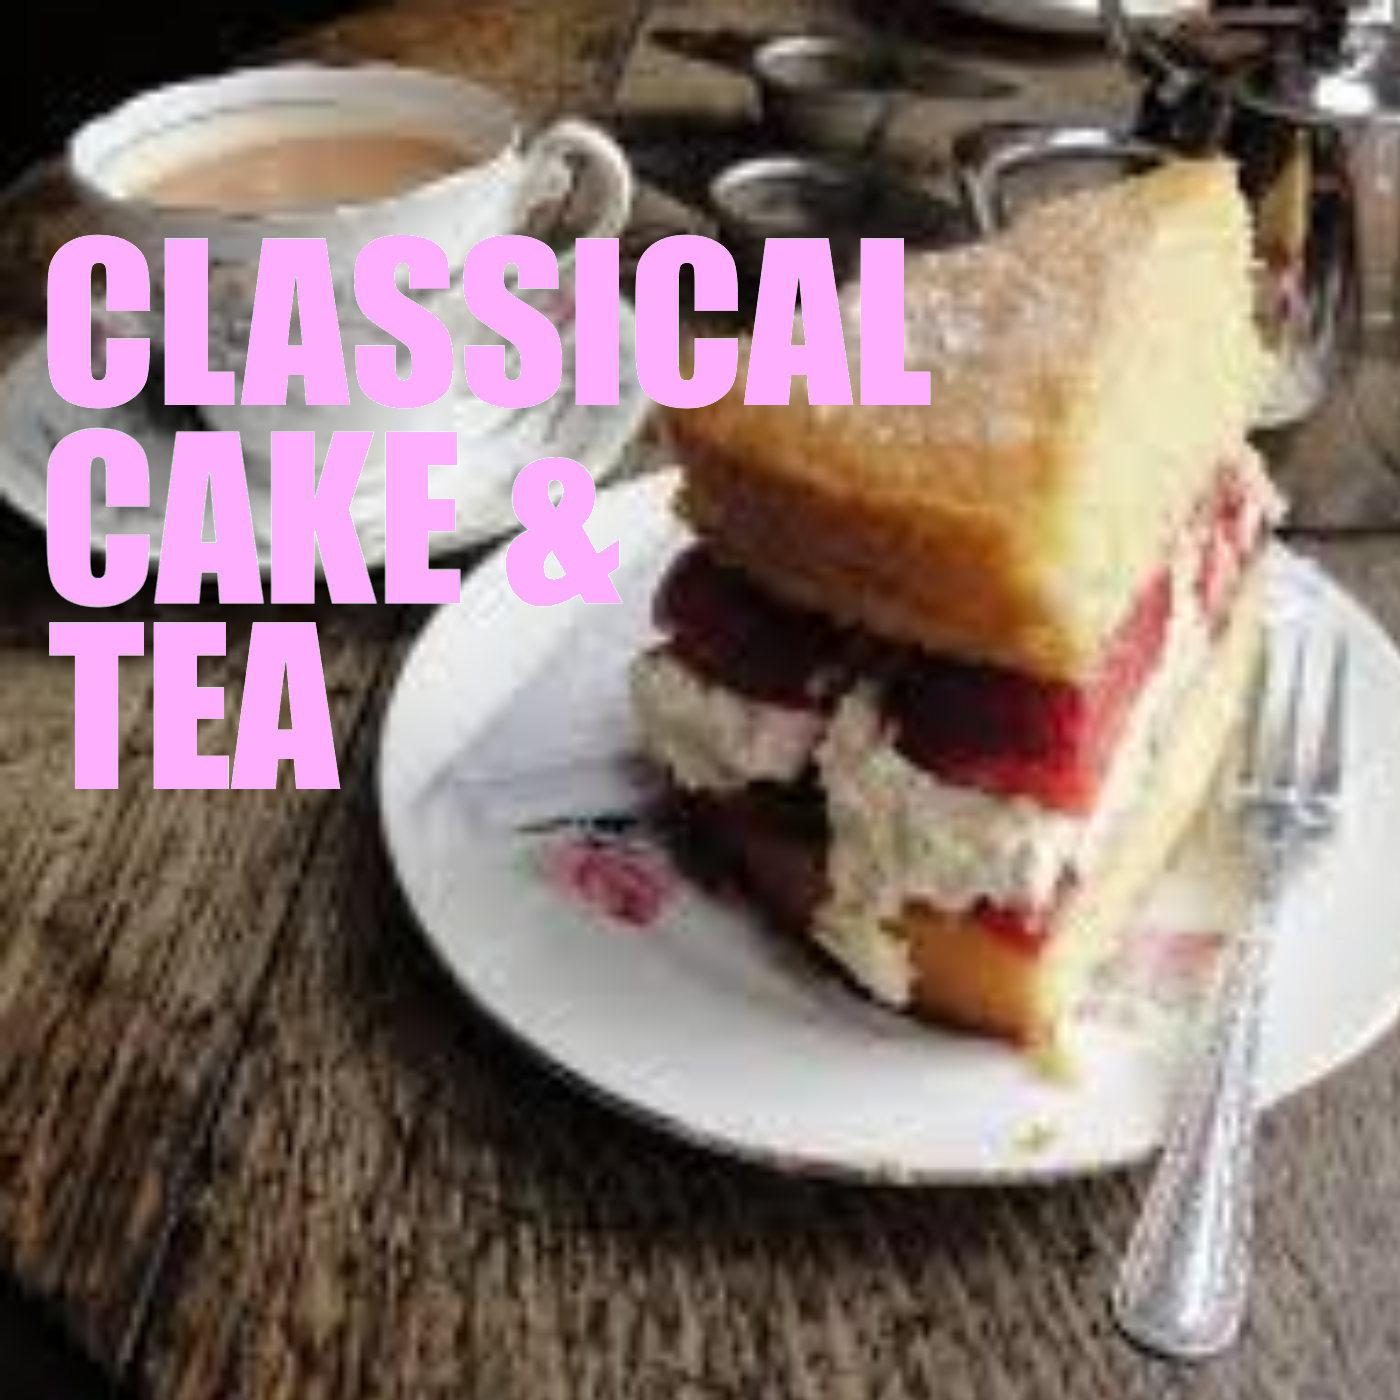 Classical Cake & Tea